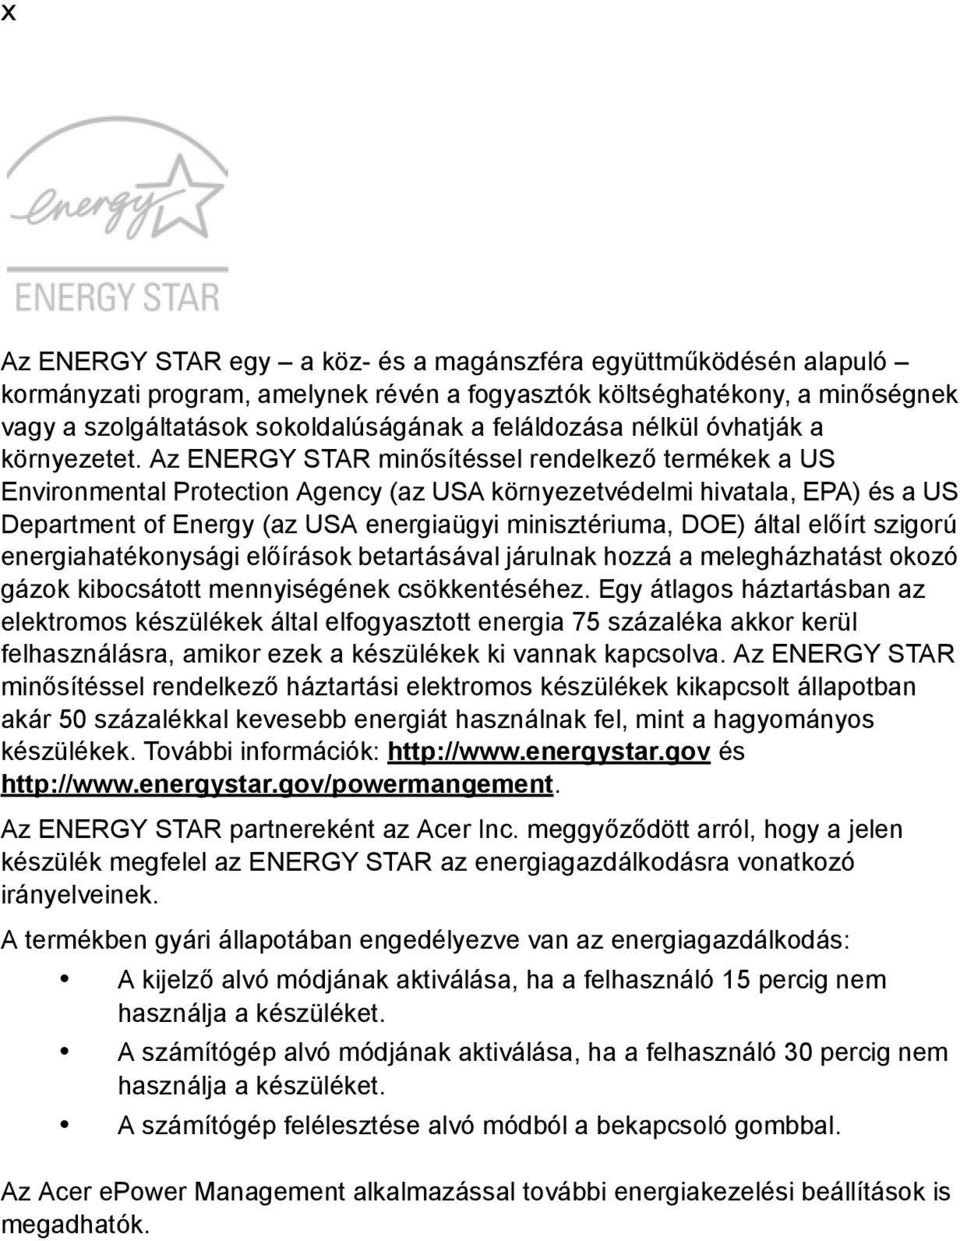 Az ENERGY STAR minősítéssel rendelkező termékek a US Environmental Protection Agency (az USA környezetvédelmi hivatala, EPA) és a US Department of Energy (az USA energiaügyi minisztériuma, DOE) által